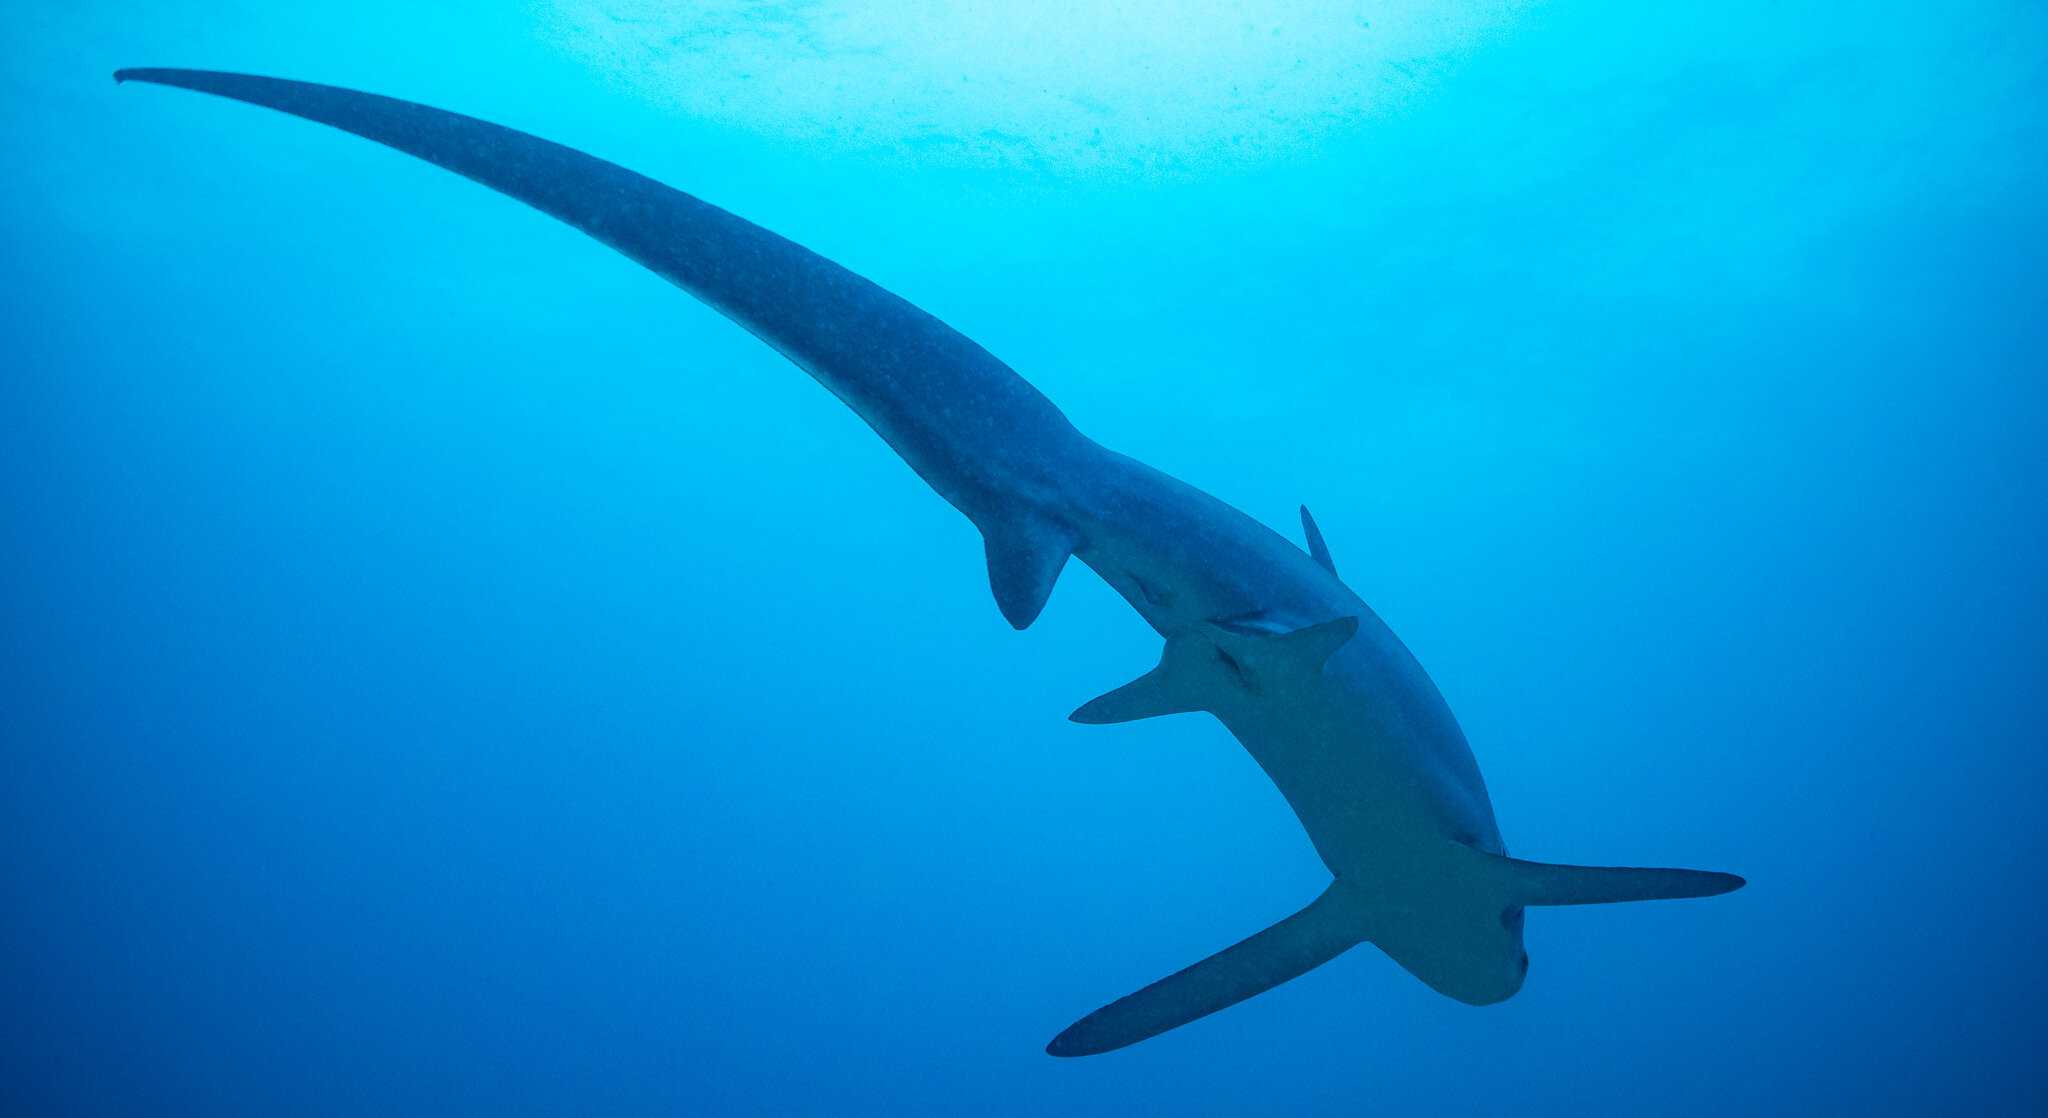 Лисья акула превратила позвоночник в требушет, чтобы глушить рыбу хвостом